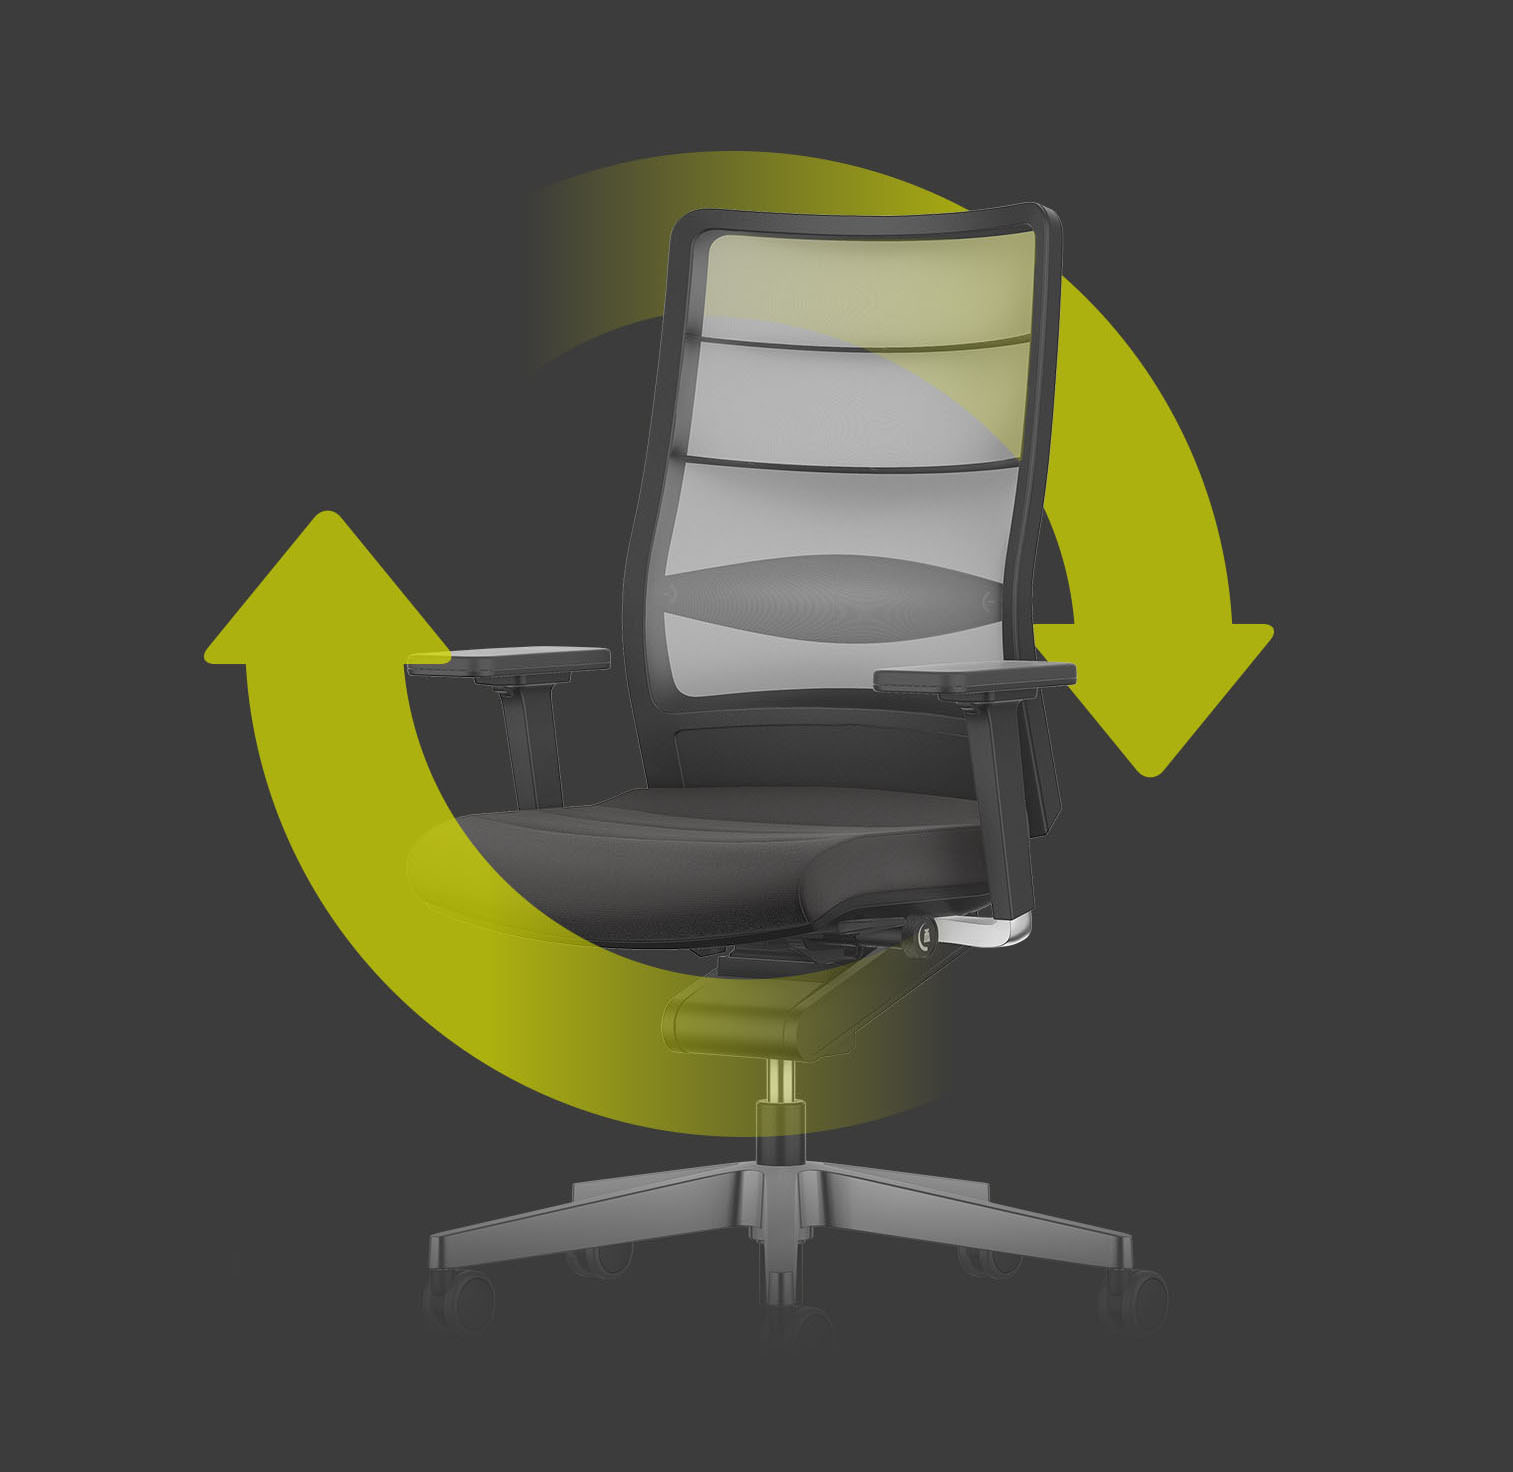 AIRPAD-kontorstol i sort med lyst netryglæn med to grønne pile, der danner en cirkel omkring stolen. De henviser til stolens bæredygtighed og genanvendelighed.